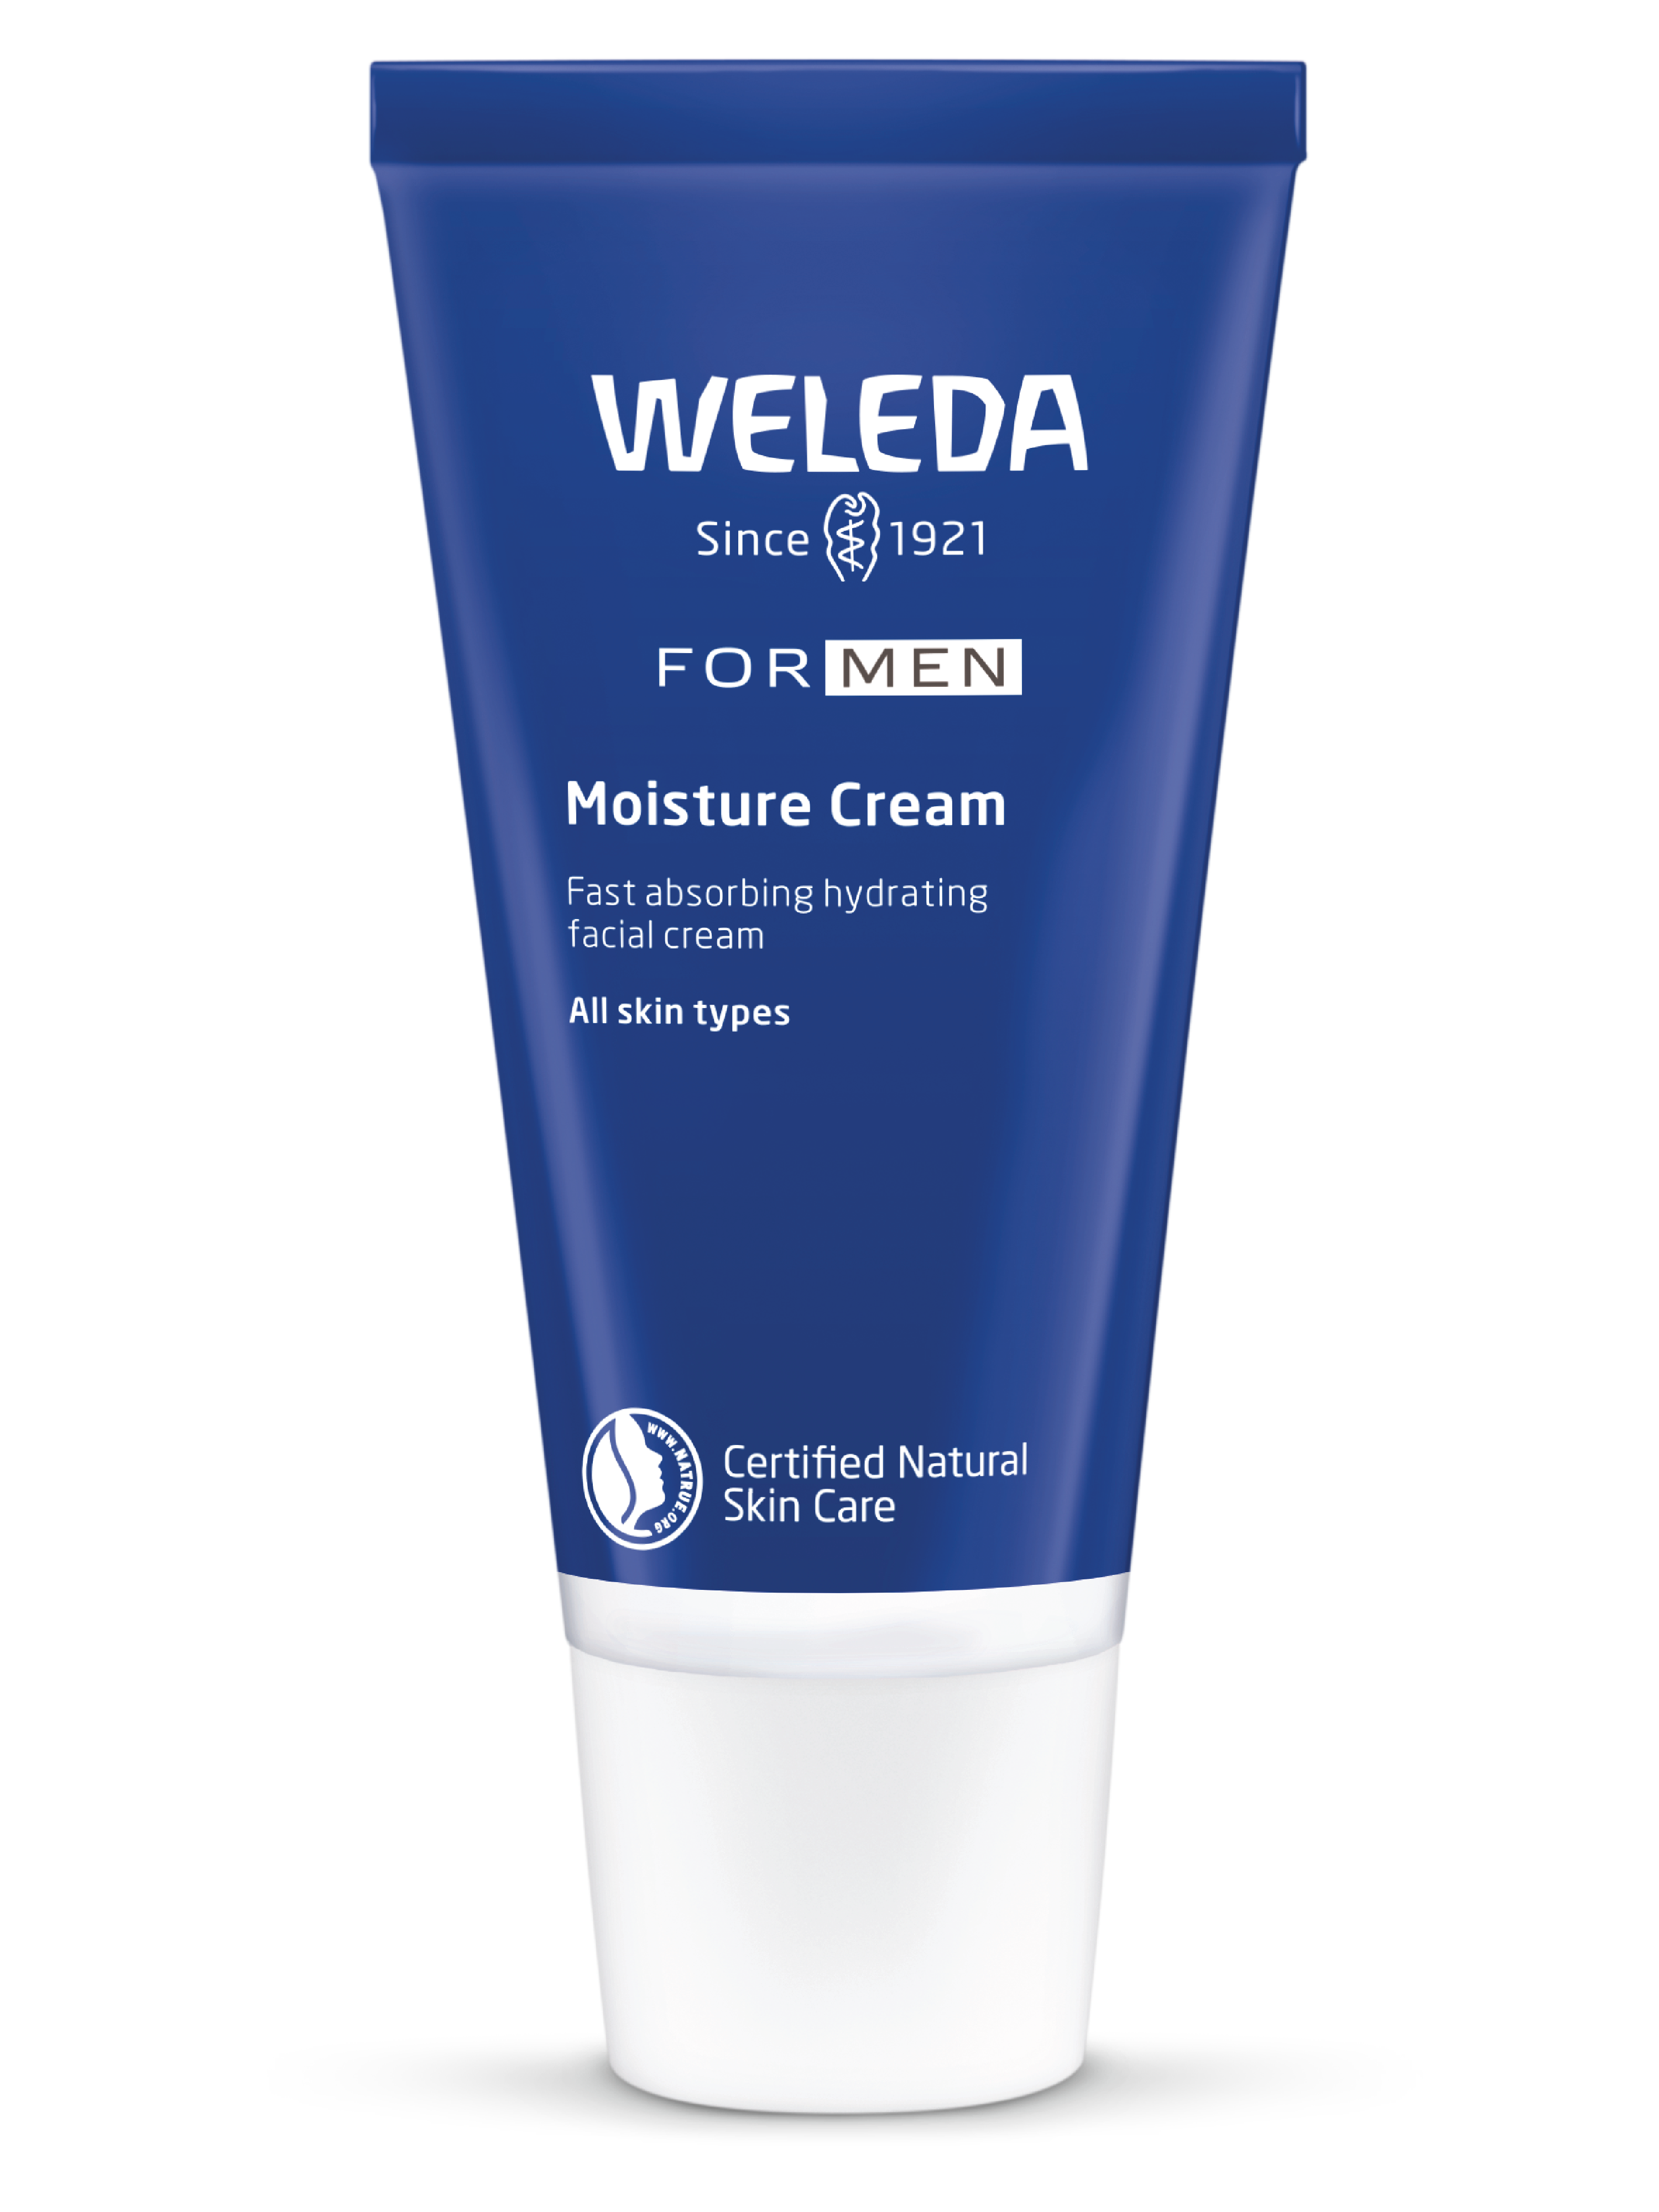 Moisture Cream for Men, 30 ml